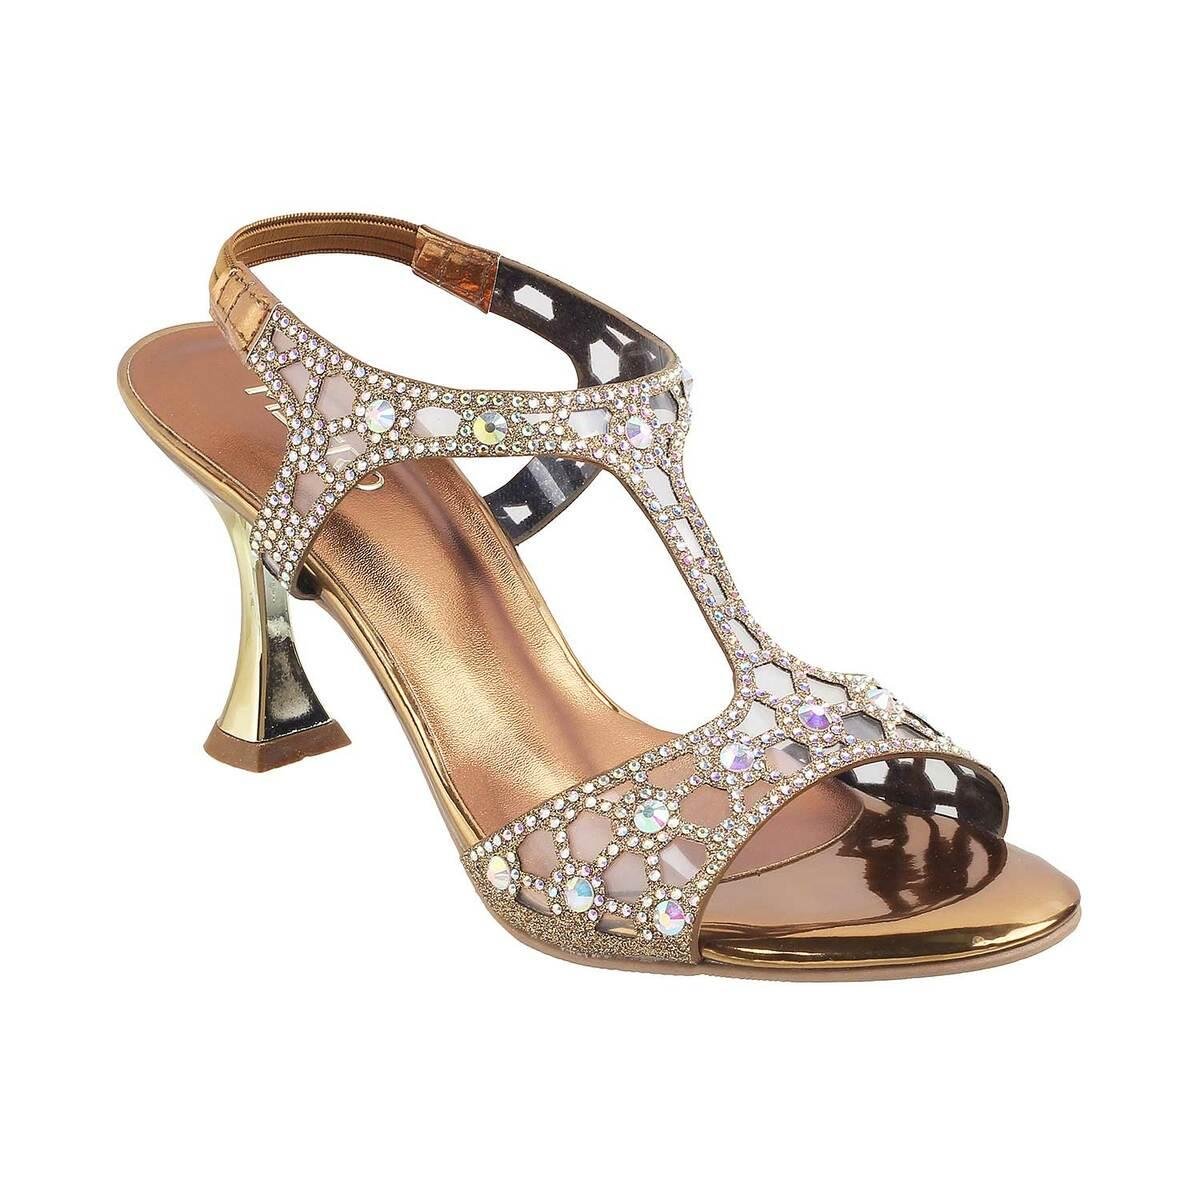 Buy Gold Jashn Wedges Heels by Designer HOUSE OF VIAN Online at Ogaan.com